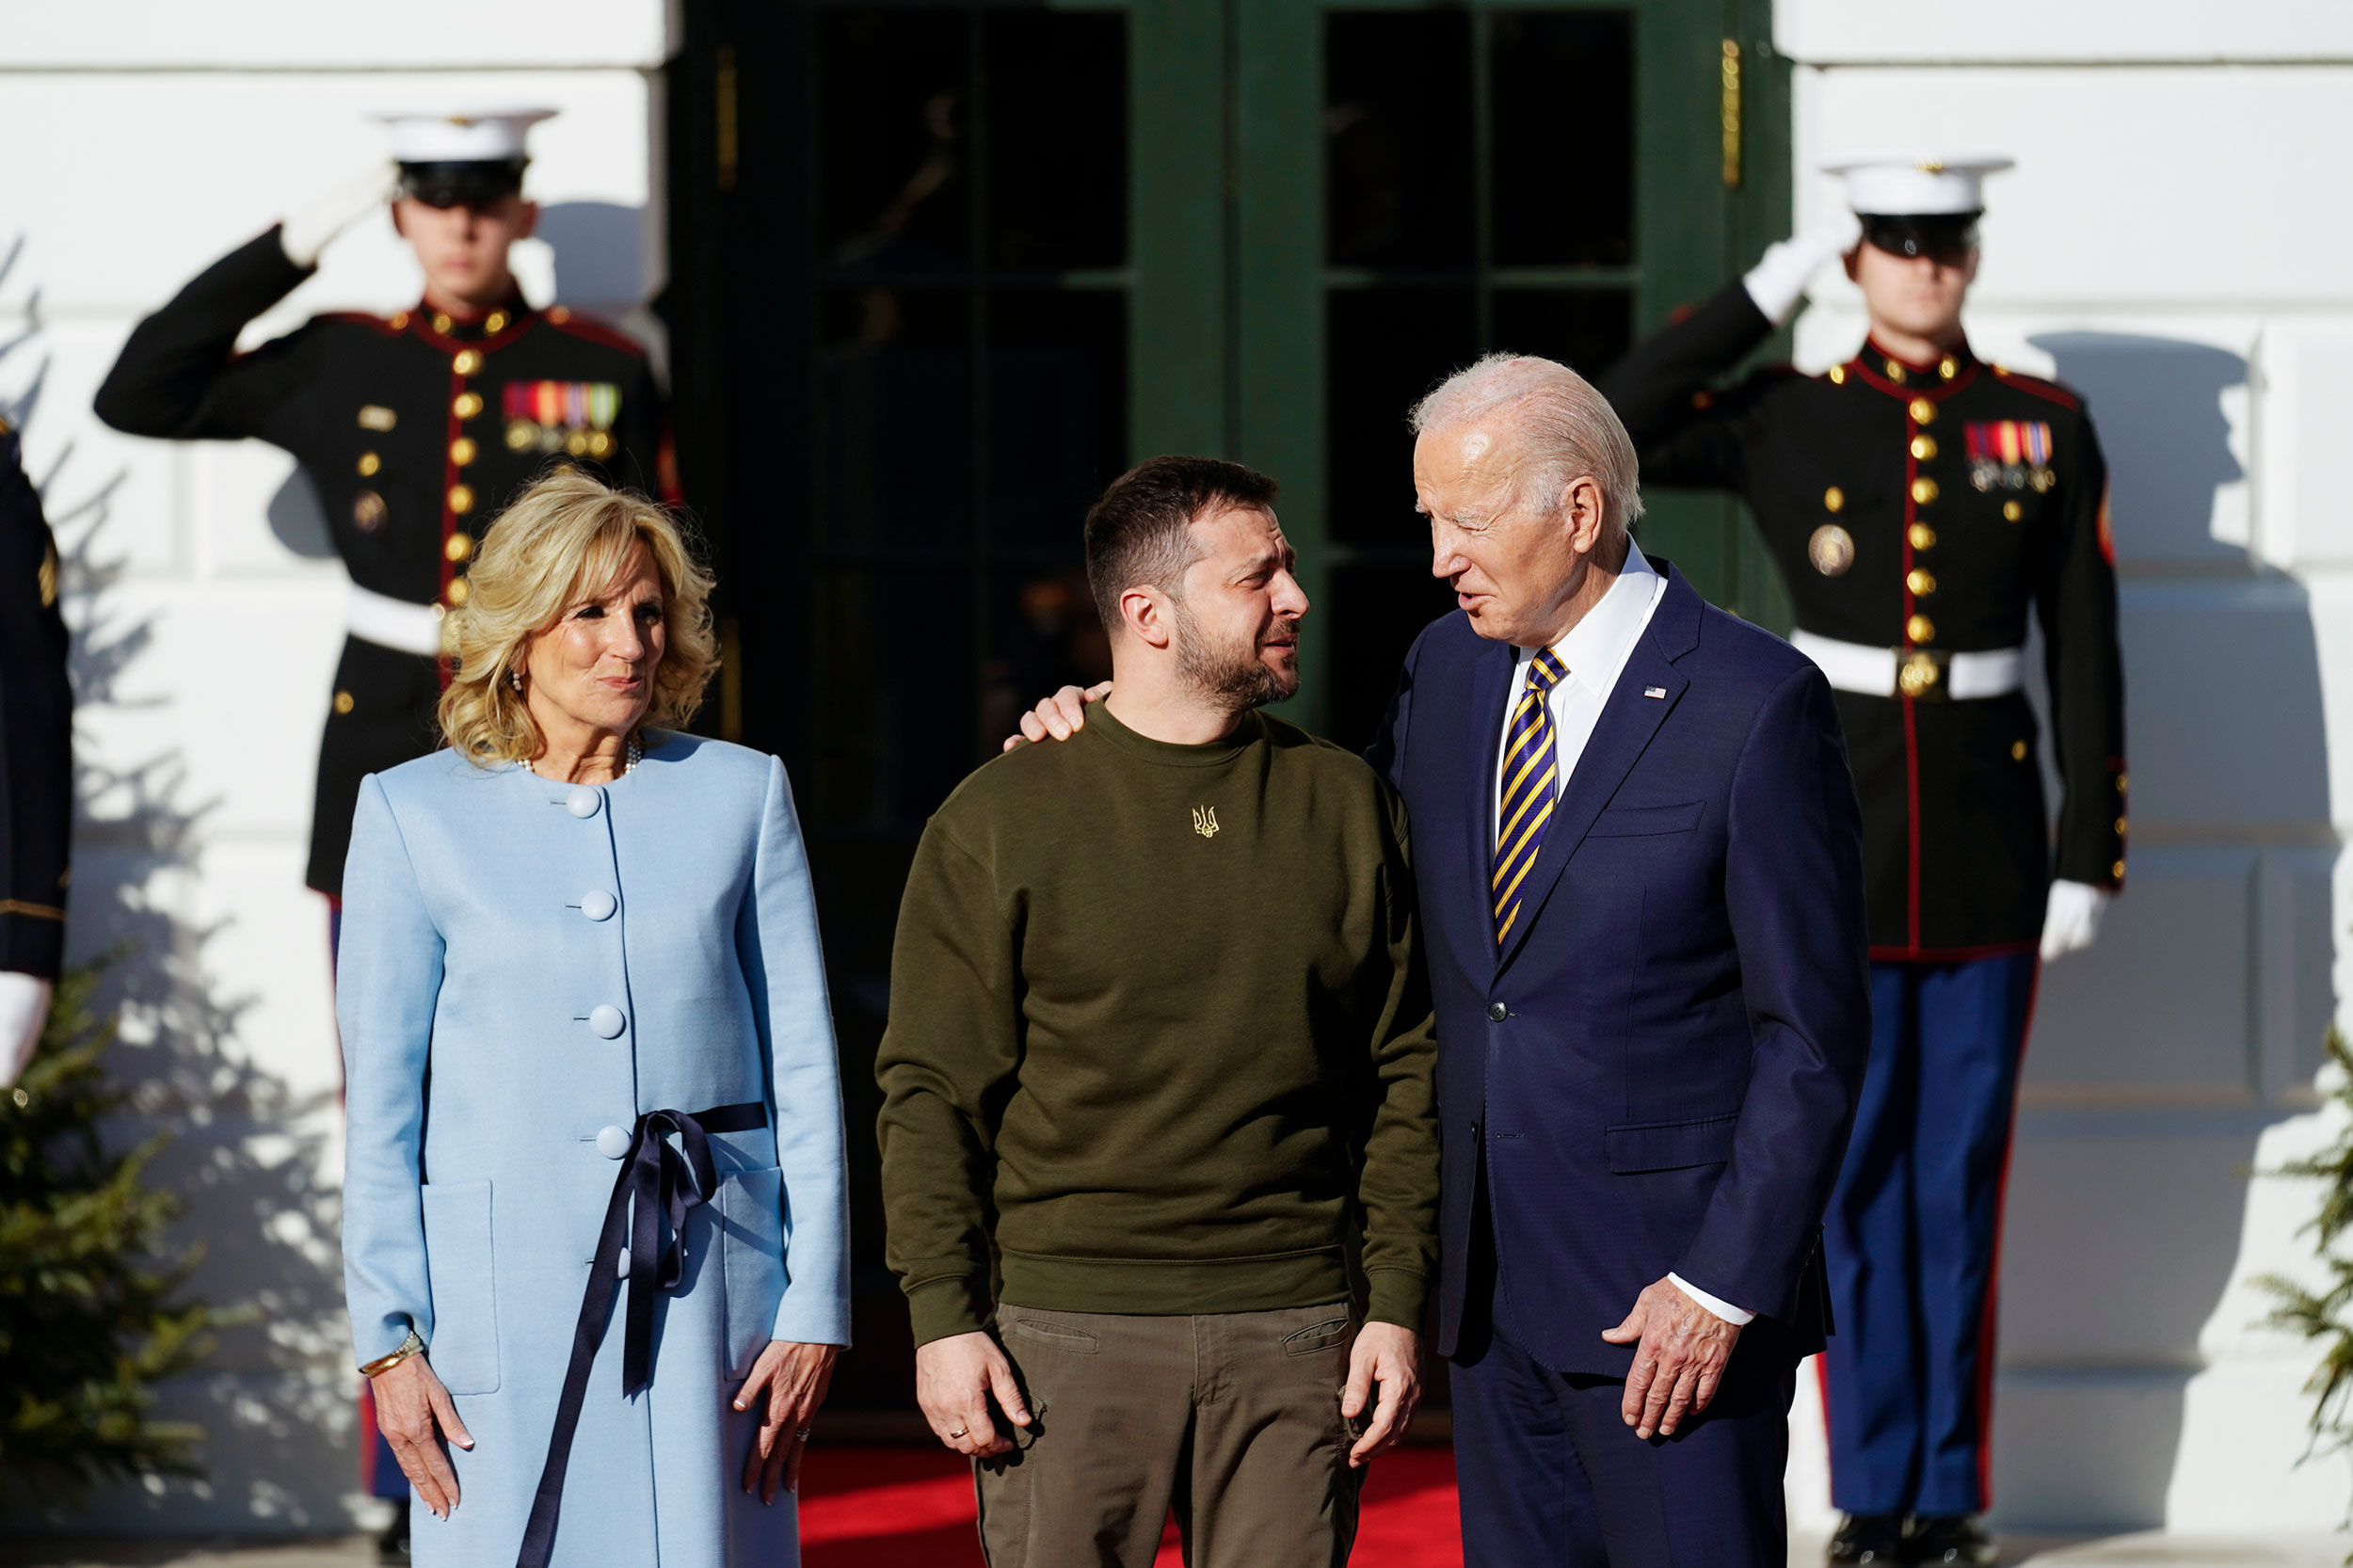 President Joe Biden and first lady Jill Biden greet Ukrainian President Zelensy at the White House on Wednesday.